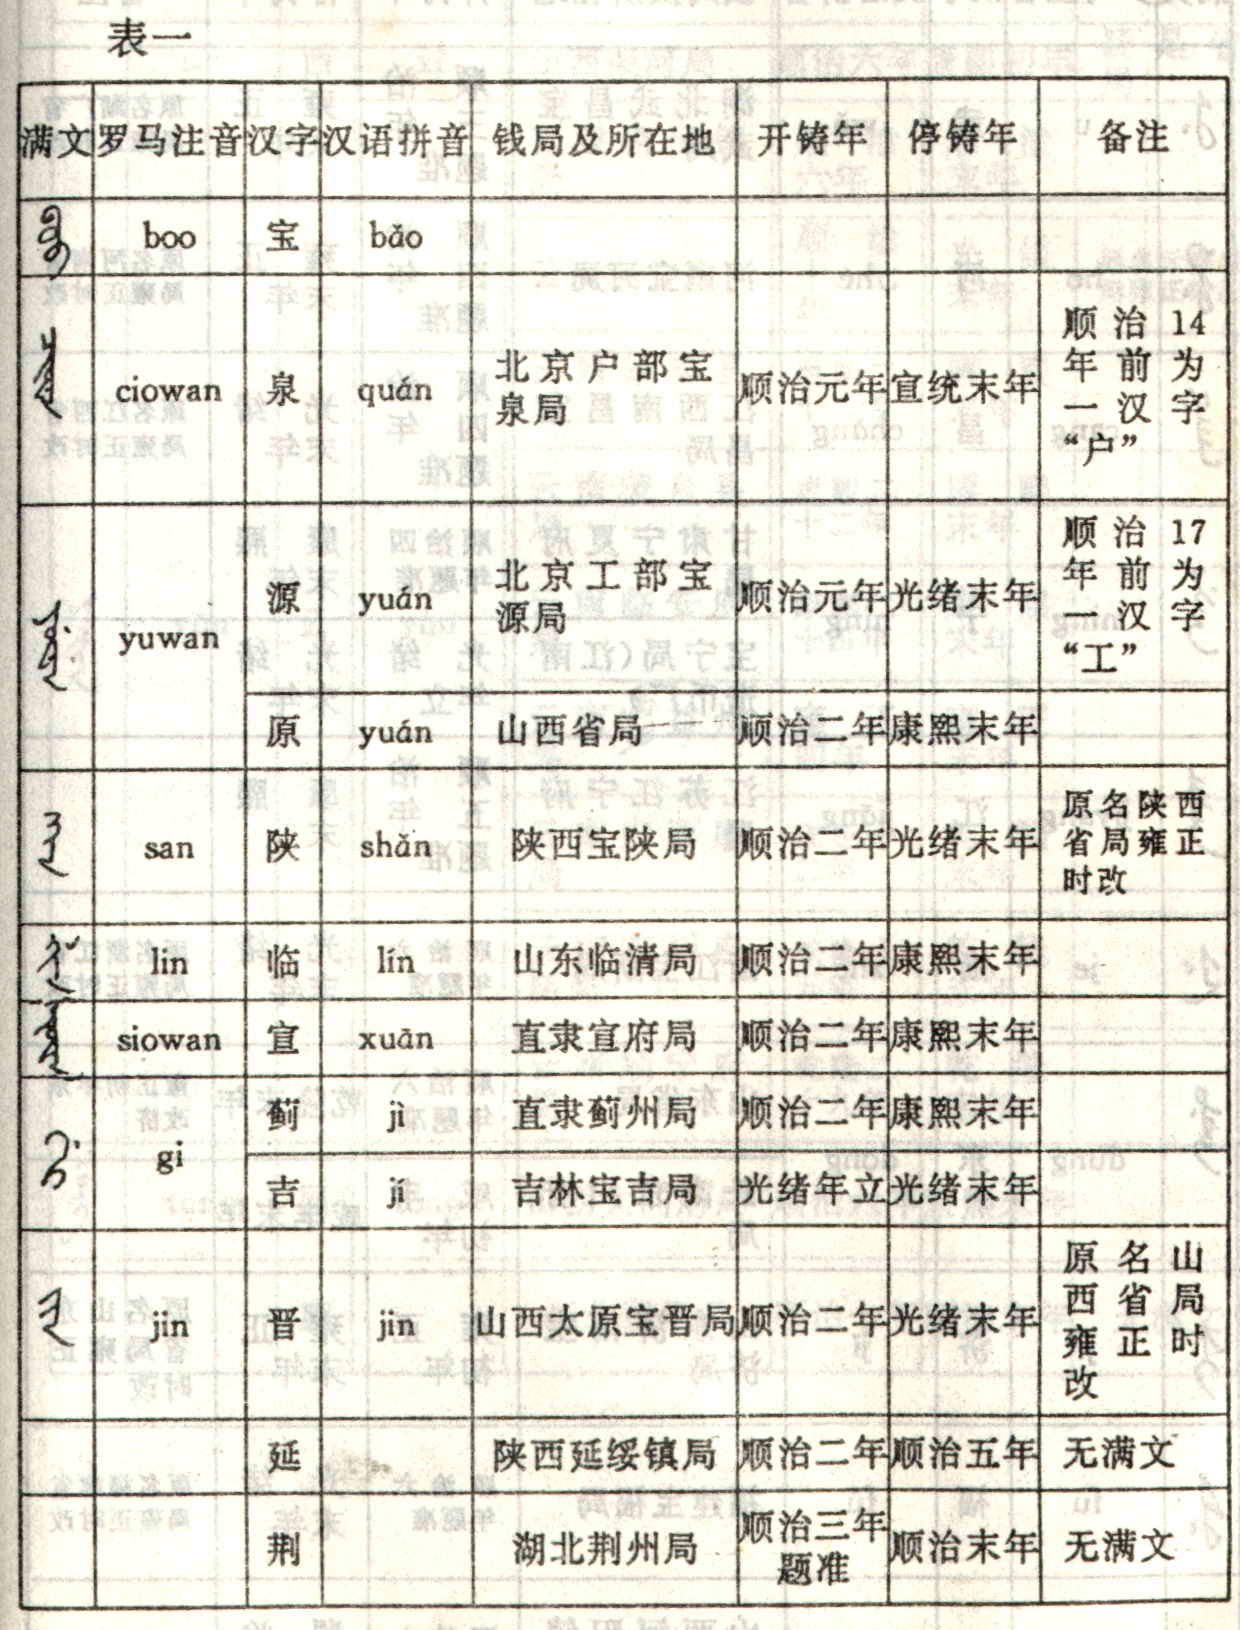 钱局满文及其他少数民族文字与汉文对照表